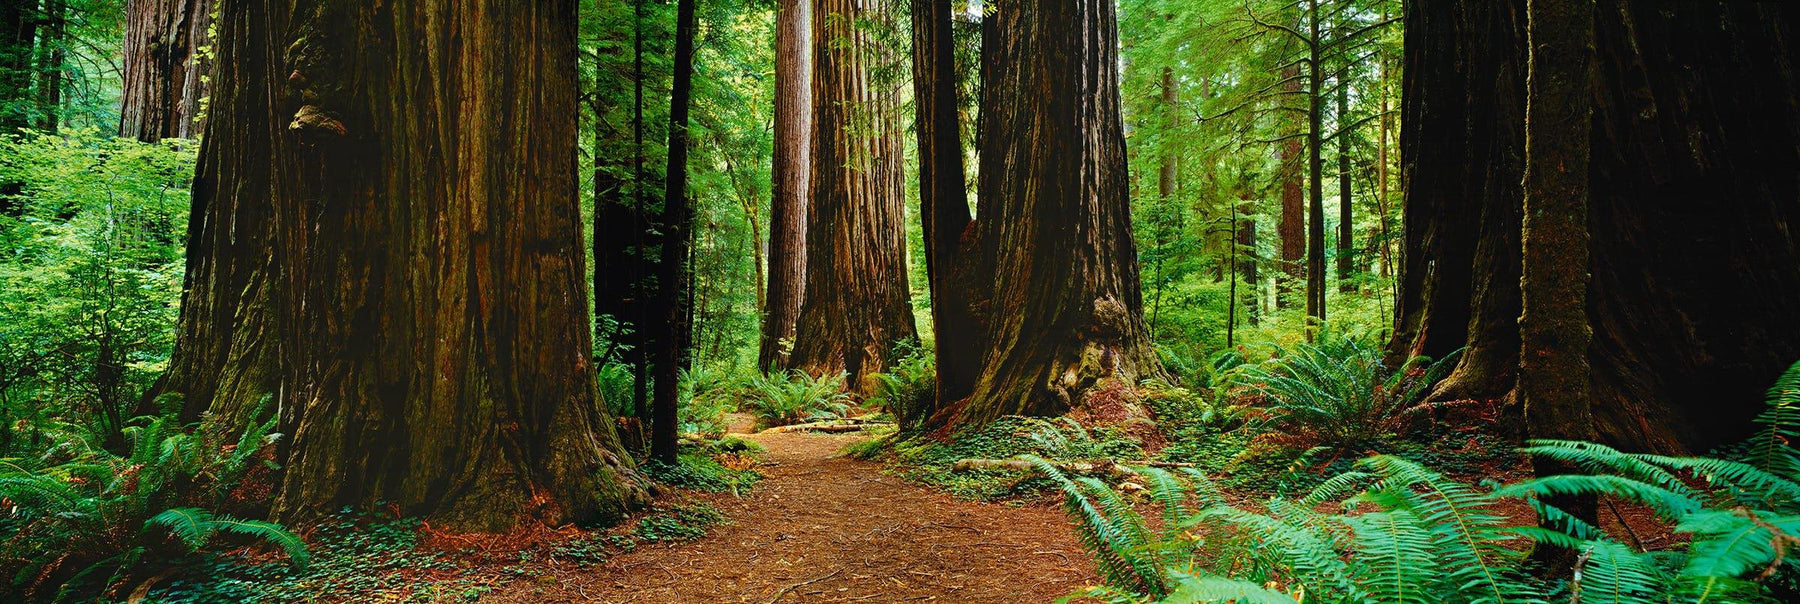 Ảnh nghệ thuật rừng thông đỏ - Hay đến ngay với bức ảnh nghệ thuật về rừng thông đỏ, mang đến cho bạn cảm giác như đang đứng giữa khu rừng tuyệt đẹp với ánh sáng và bóng râm xen kẽ.